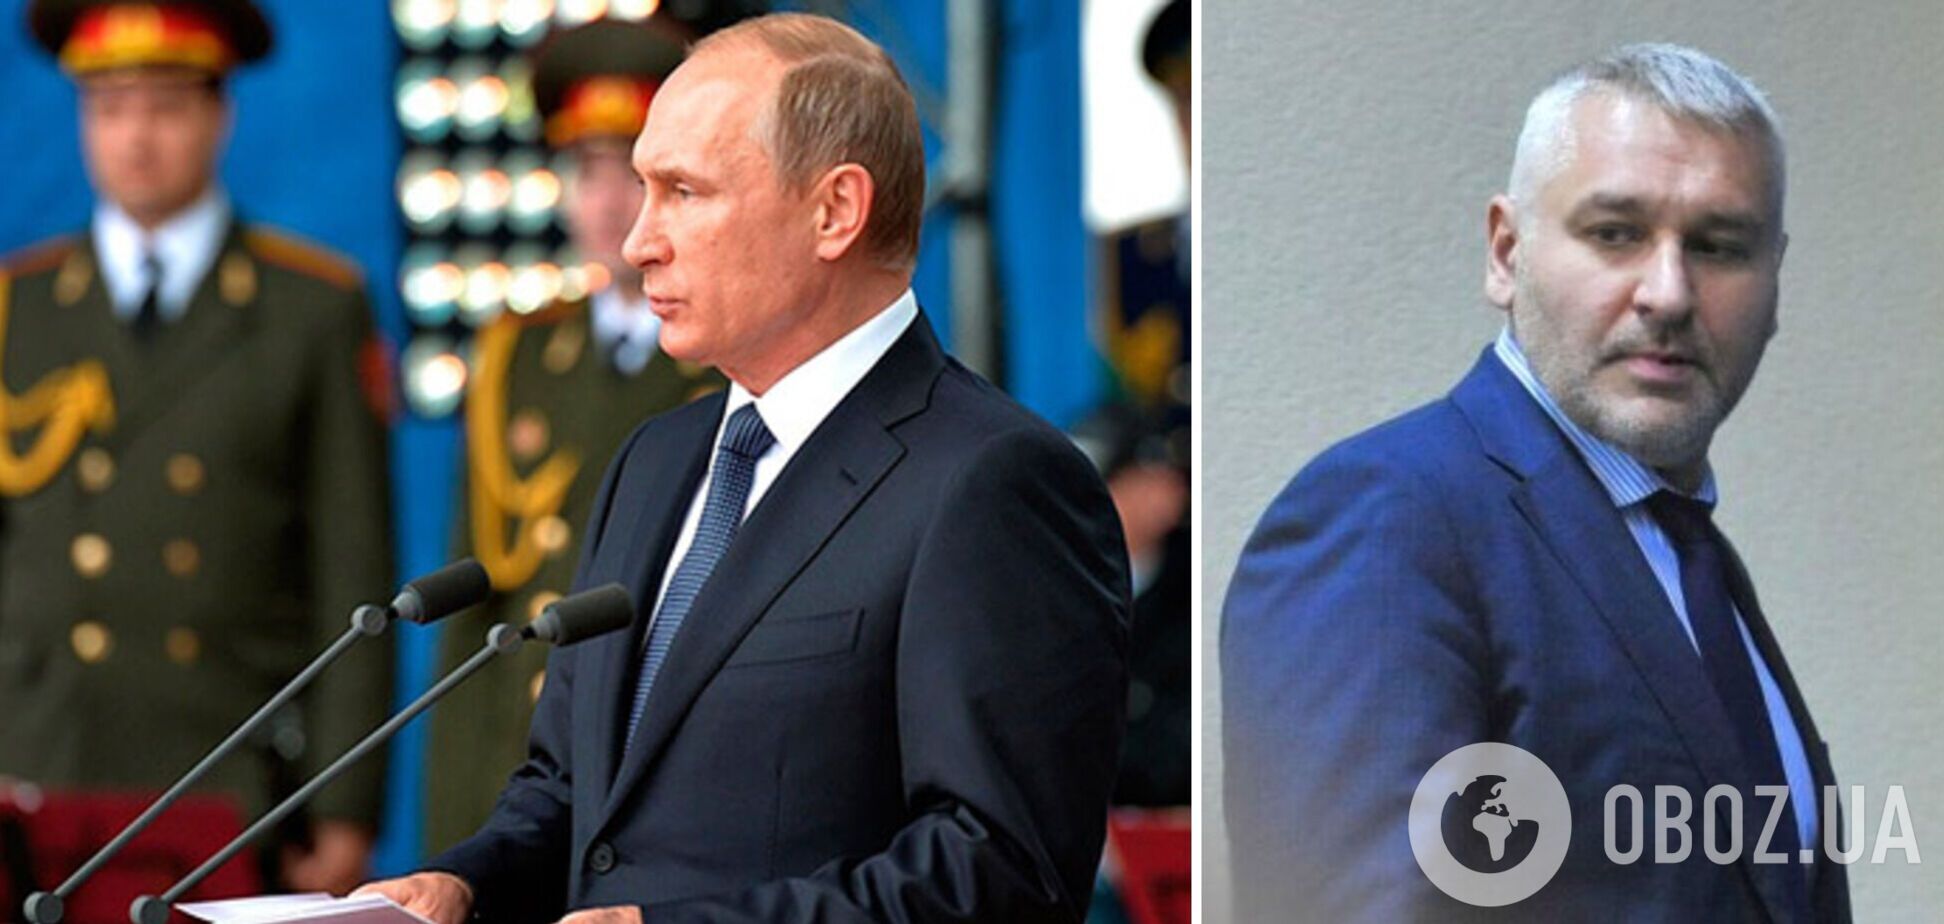 Путіну, як і раніше, потрібна здача України, це його гарантія безпеки, – Фейгін